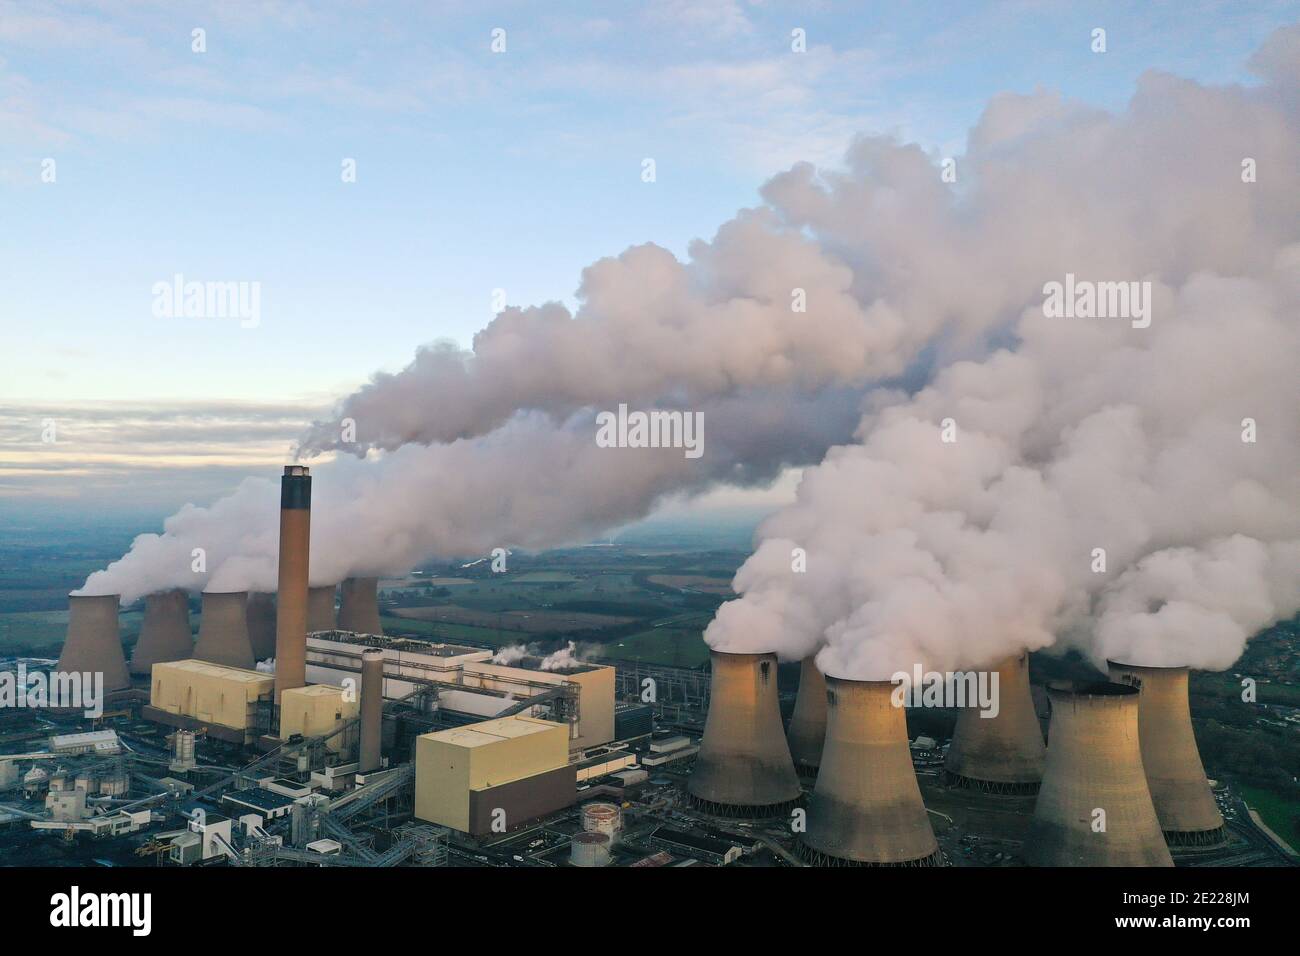 CENTRALE ÉLECTRIQUE DRAX, YORKSHIRE, ROYAUME-UNI - 7 JANVIER 2021. Une image de paysage aérien de la centrale électrique de Drax Coal pompant de la vapeur et de la fumée de son chim Banque D'Images